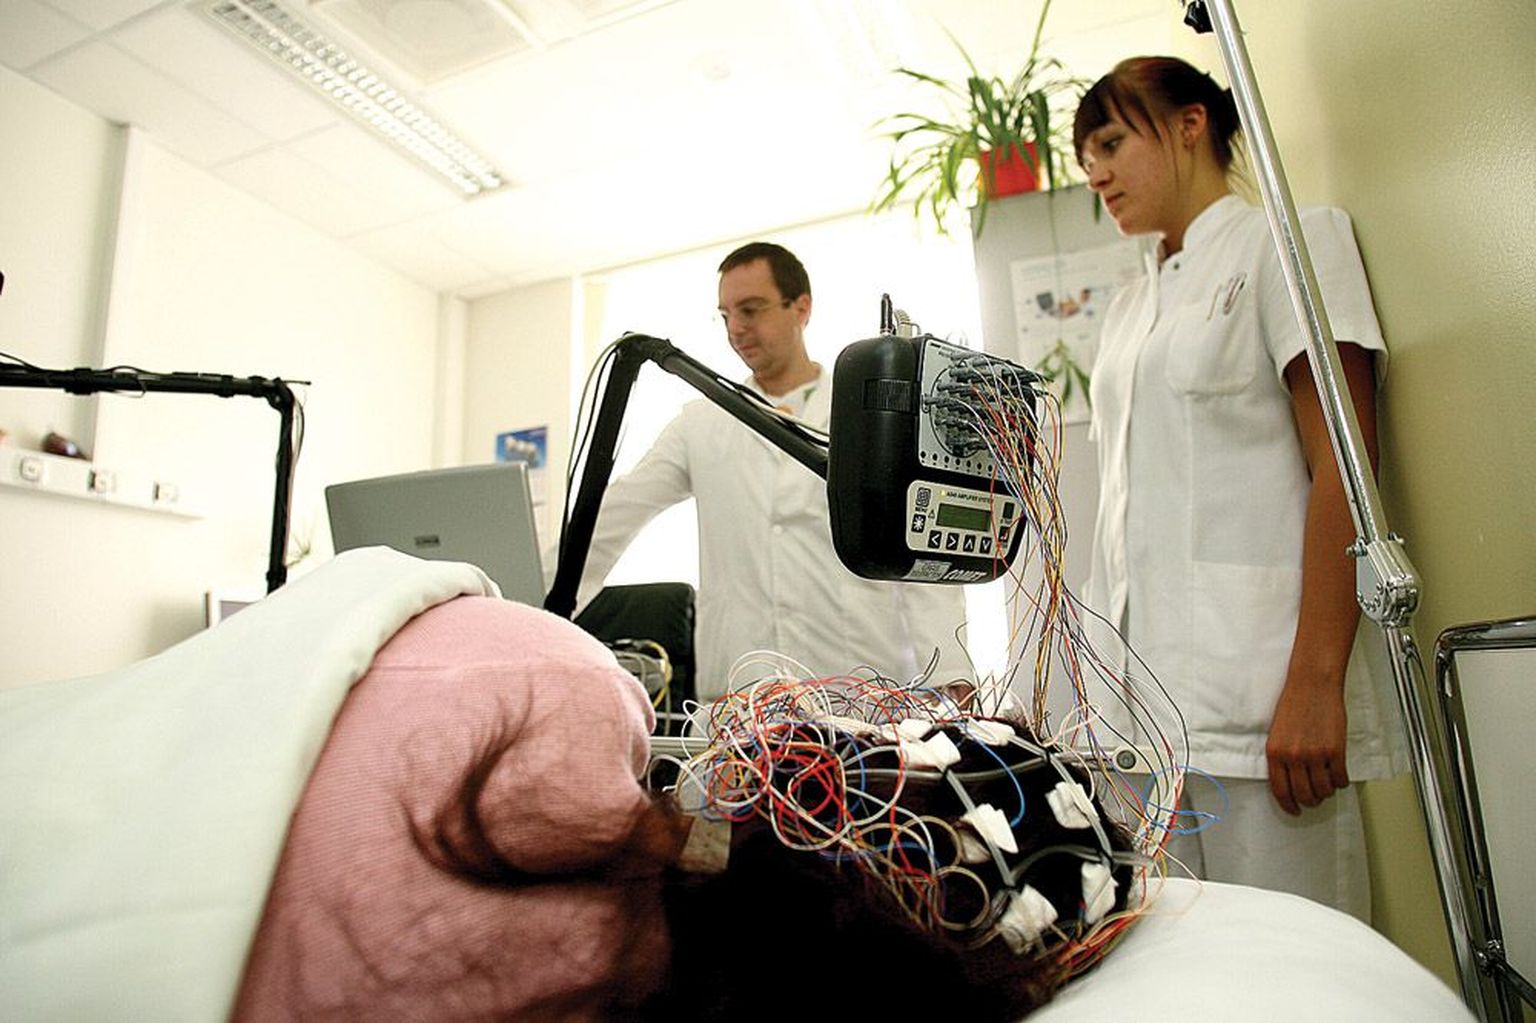 Tartu Ülikooli Kliinikumi EEG-uuringu ambulatoorses kabinetis jälgivad neuroloog Aleksei Rakitin ja õde Gerli Visnapuu, kuidas nende elektroodidega varustatud patsiendil seal läheb.